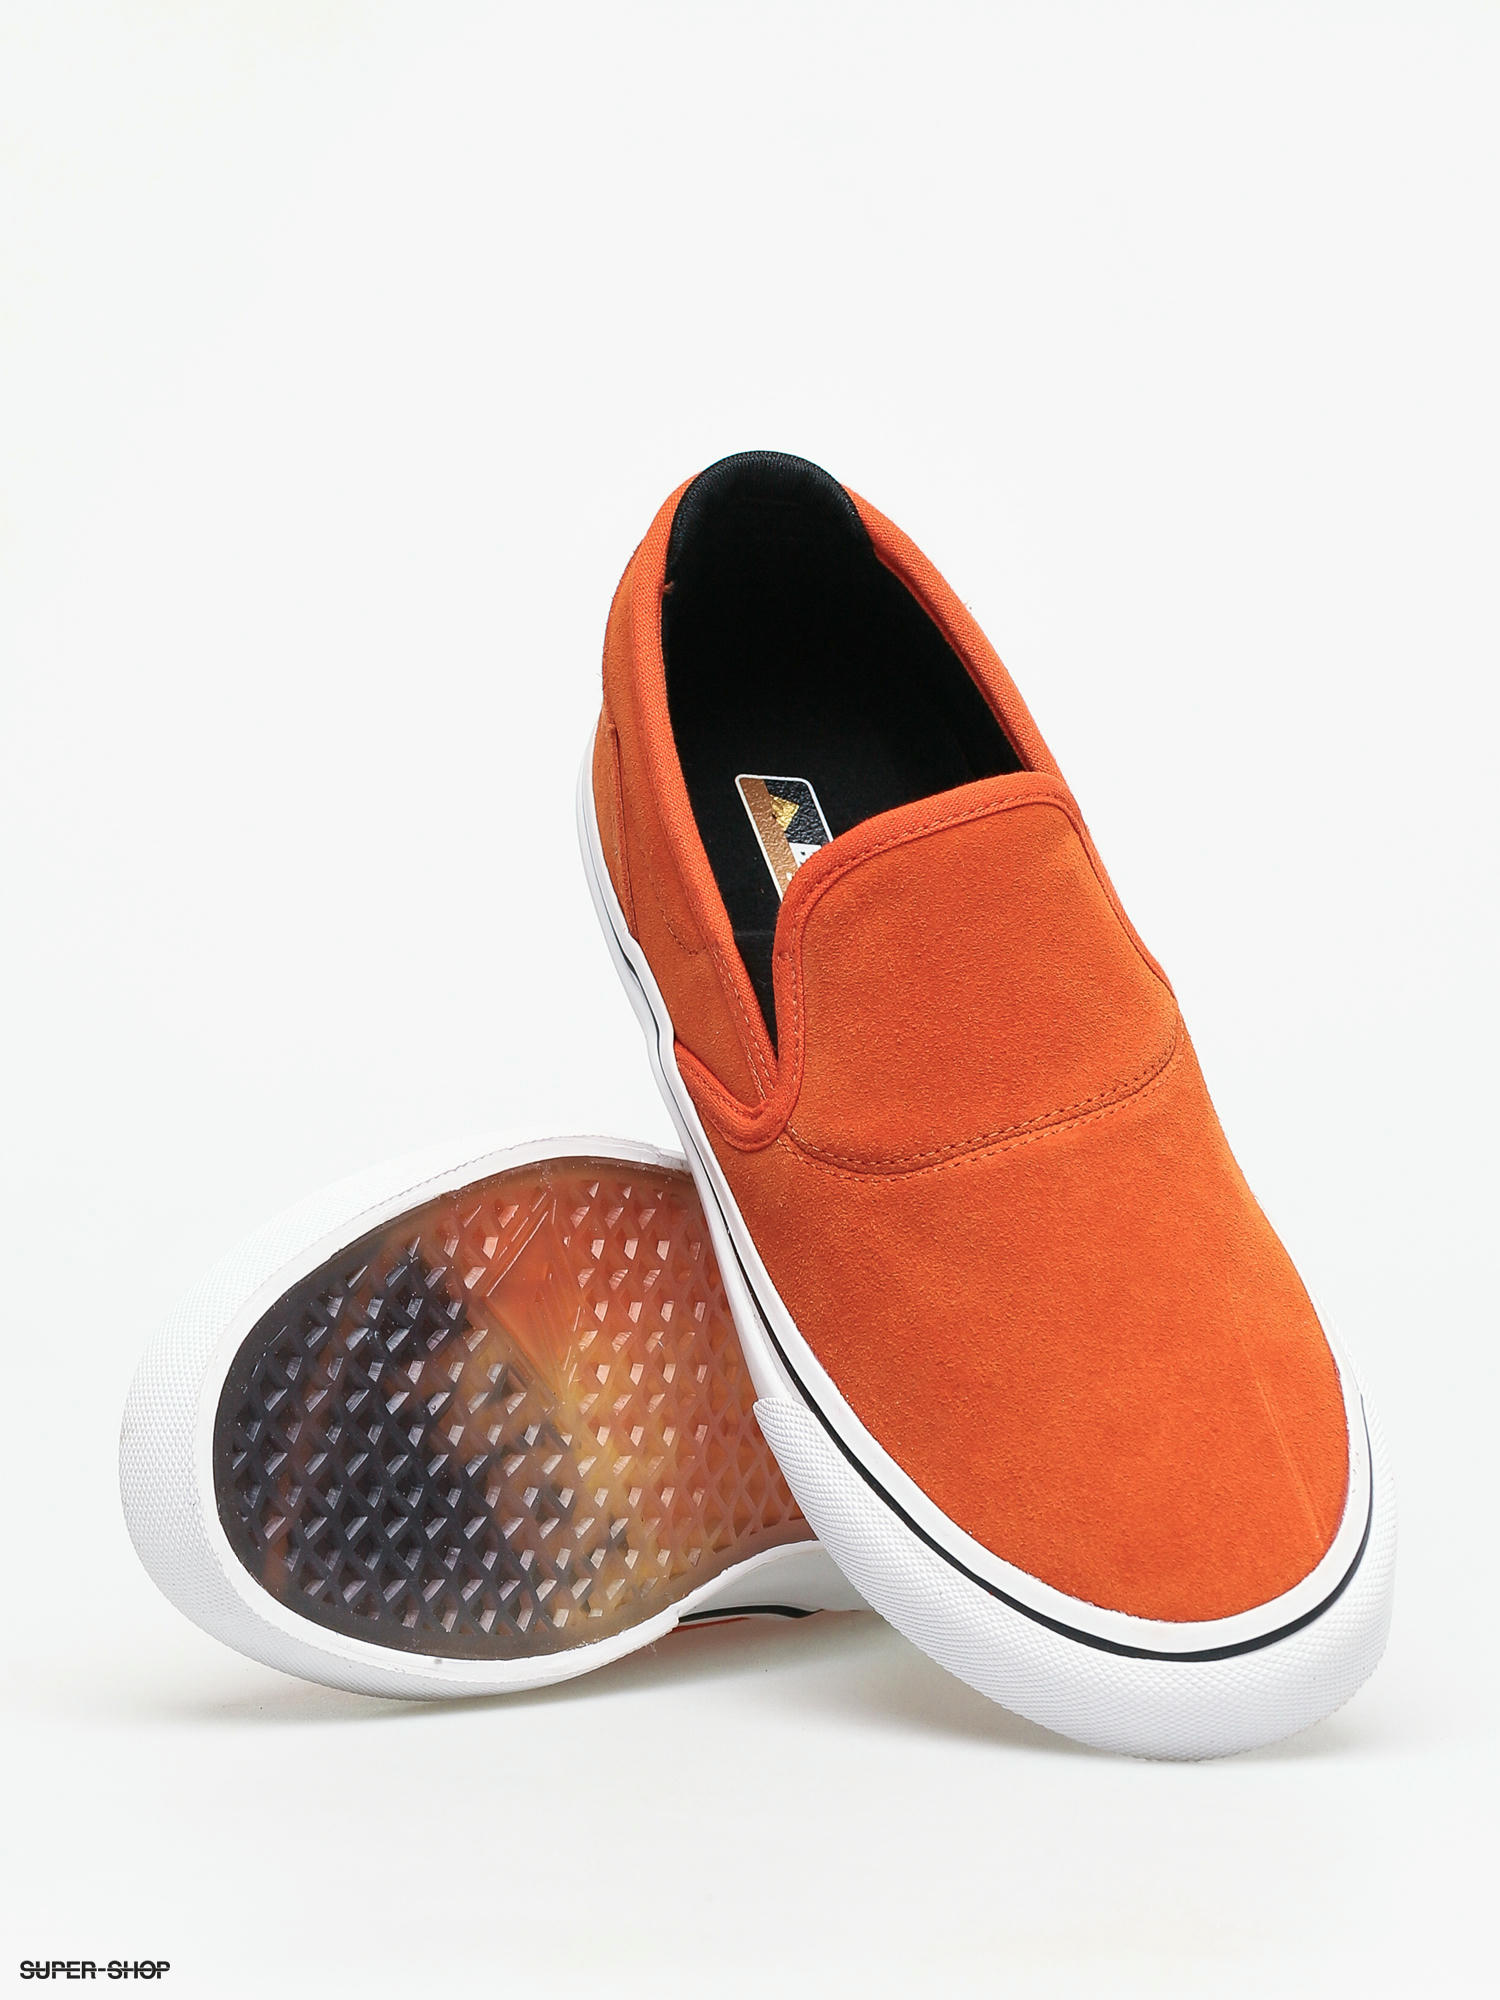 orange slip on shoes